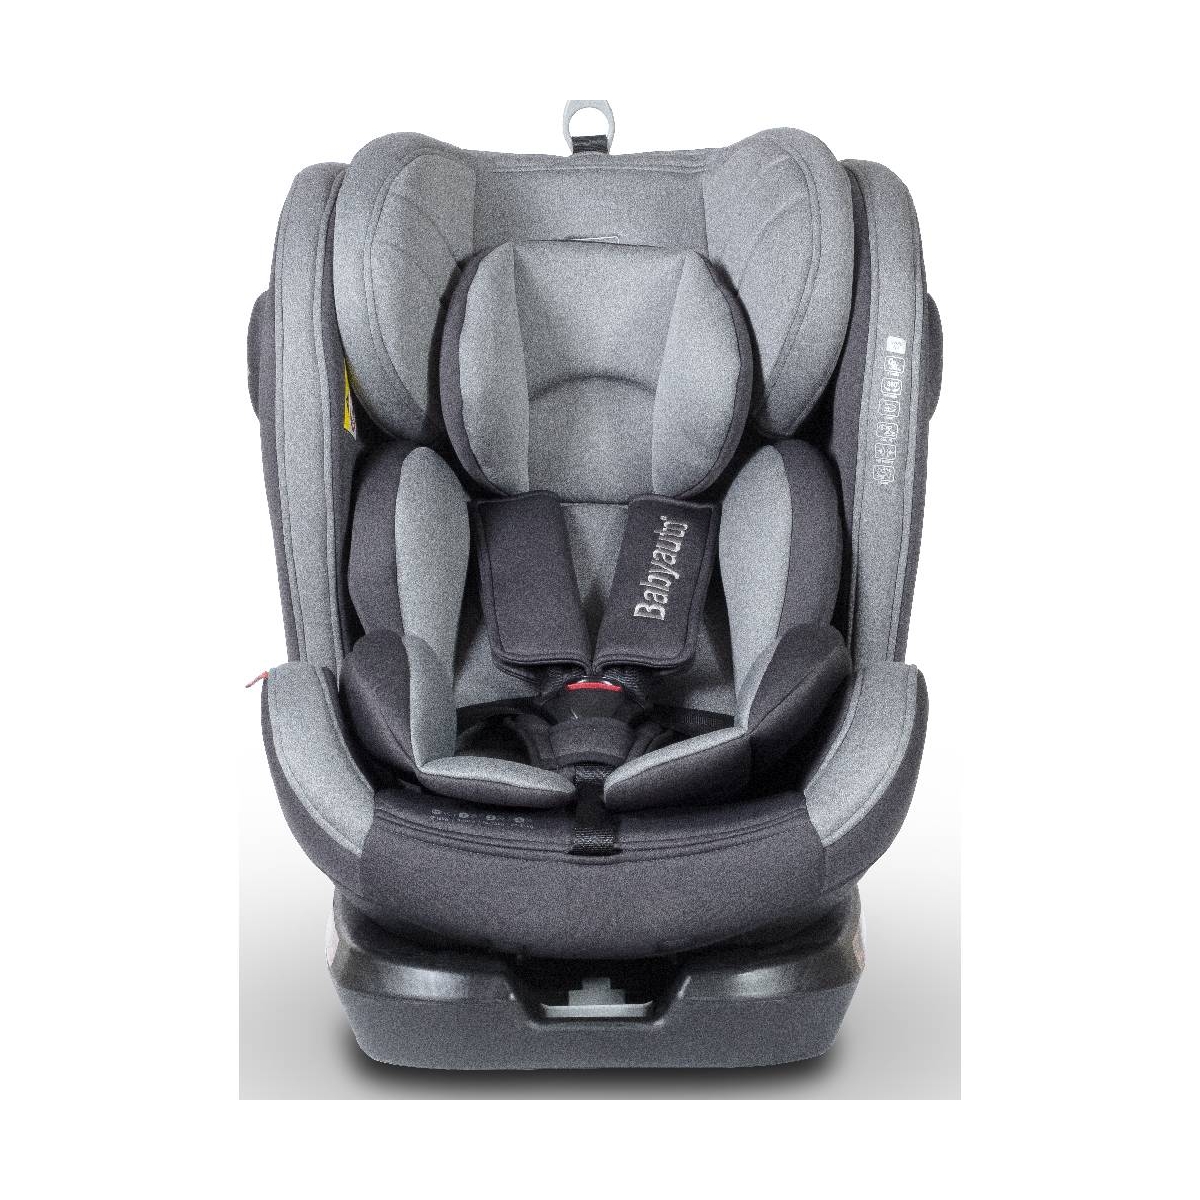 Babyauto SvingFix SP 360 Spin Group 0+/1/2/3 Car Seat